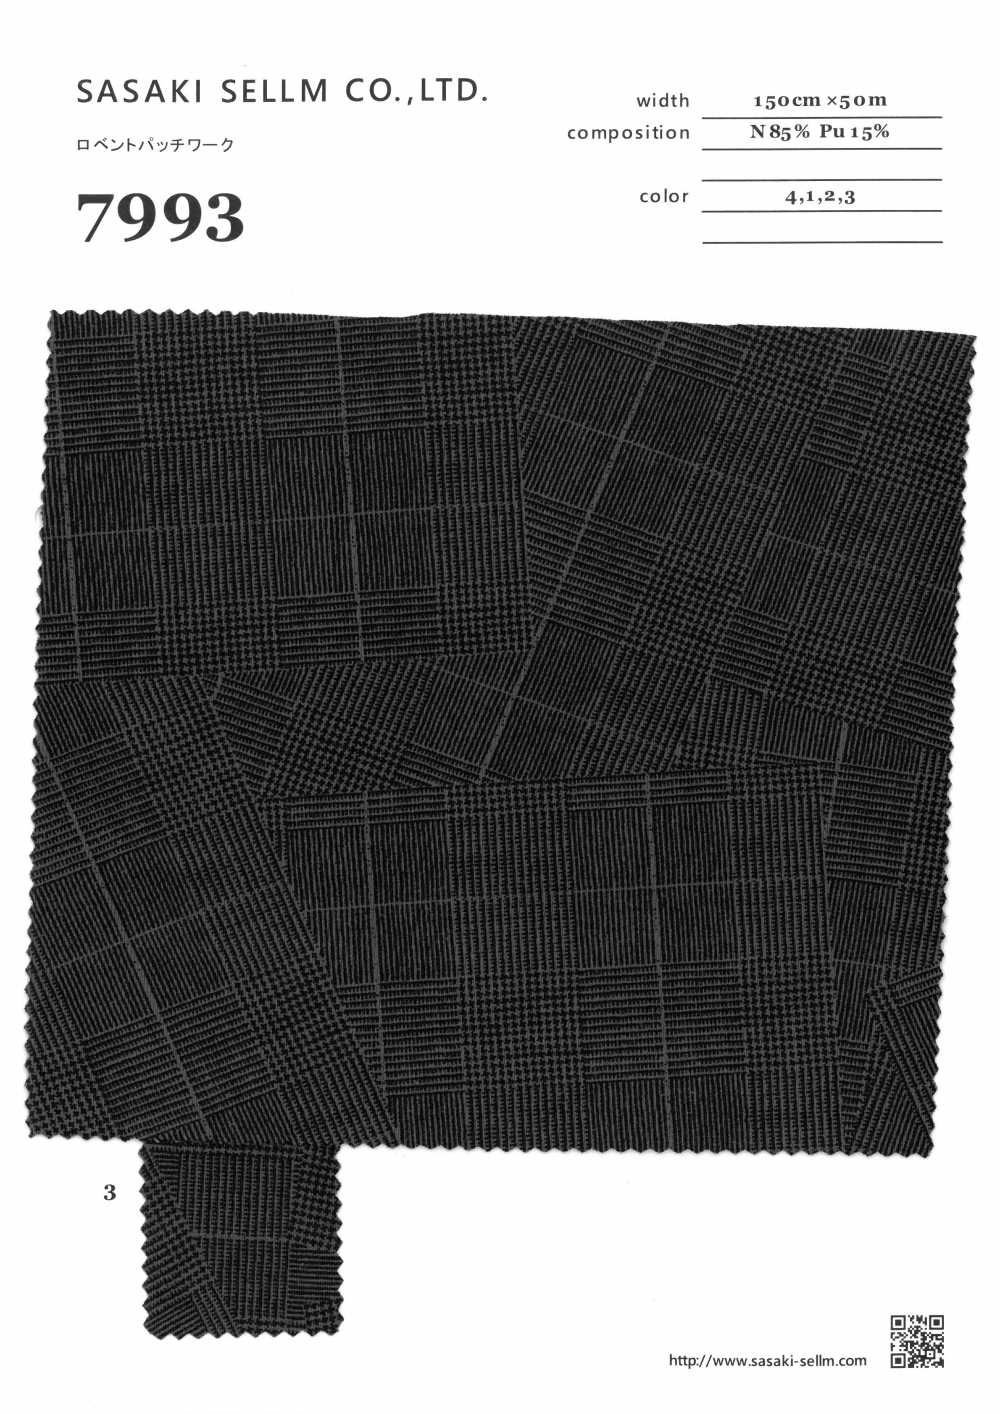 7993 Patchwork Amoureux[Fabrication De Textile] SASAKISELLM